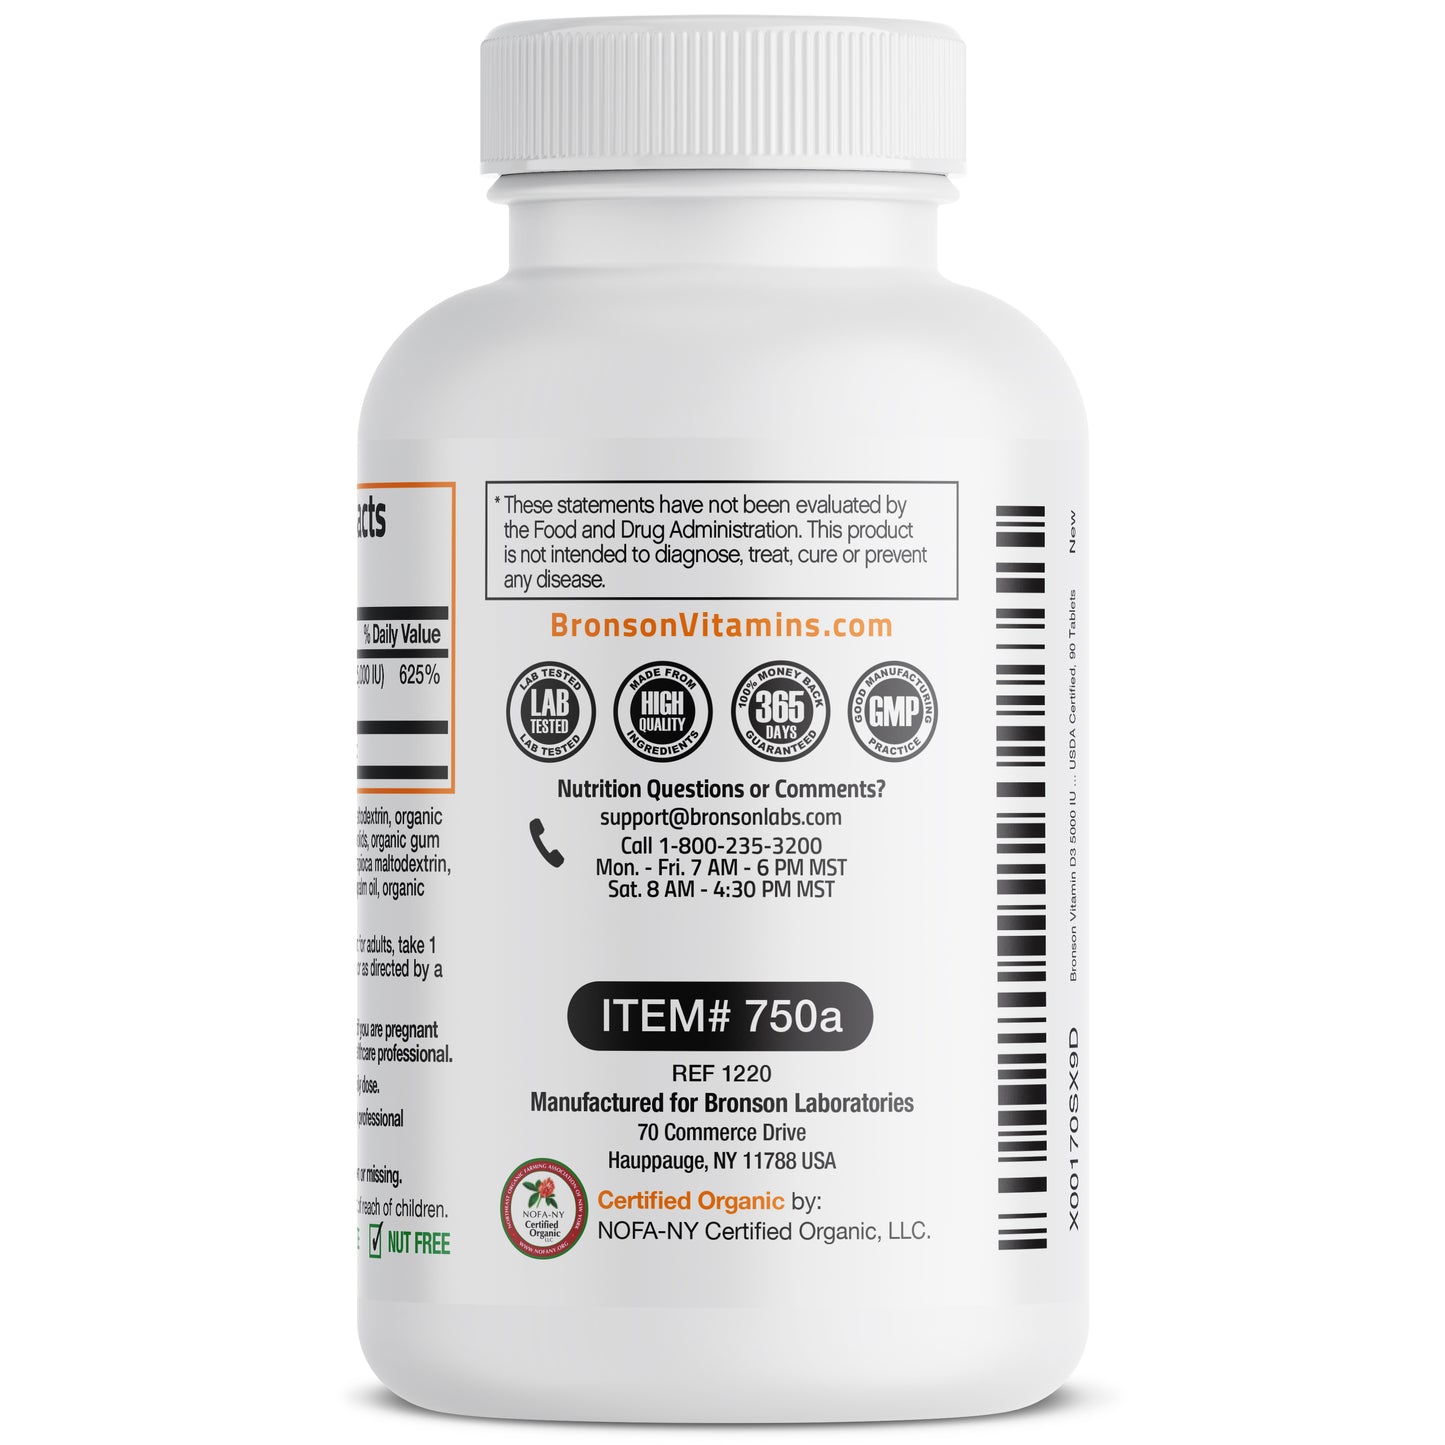 Vitamin D3 USDA Certified Organic - 5,000 IU